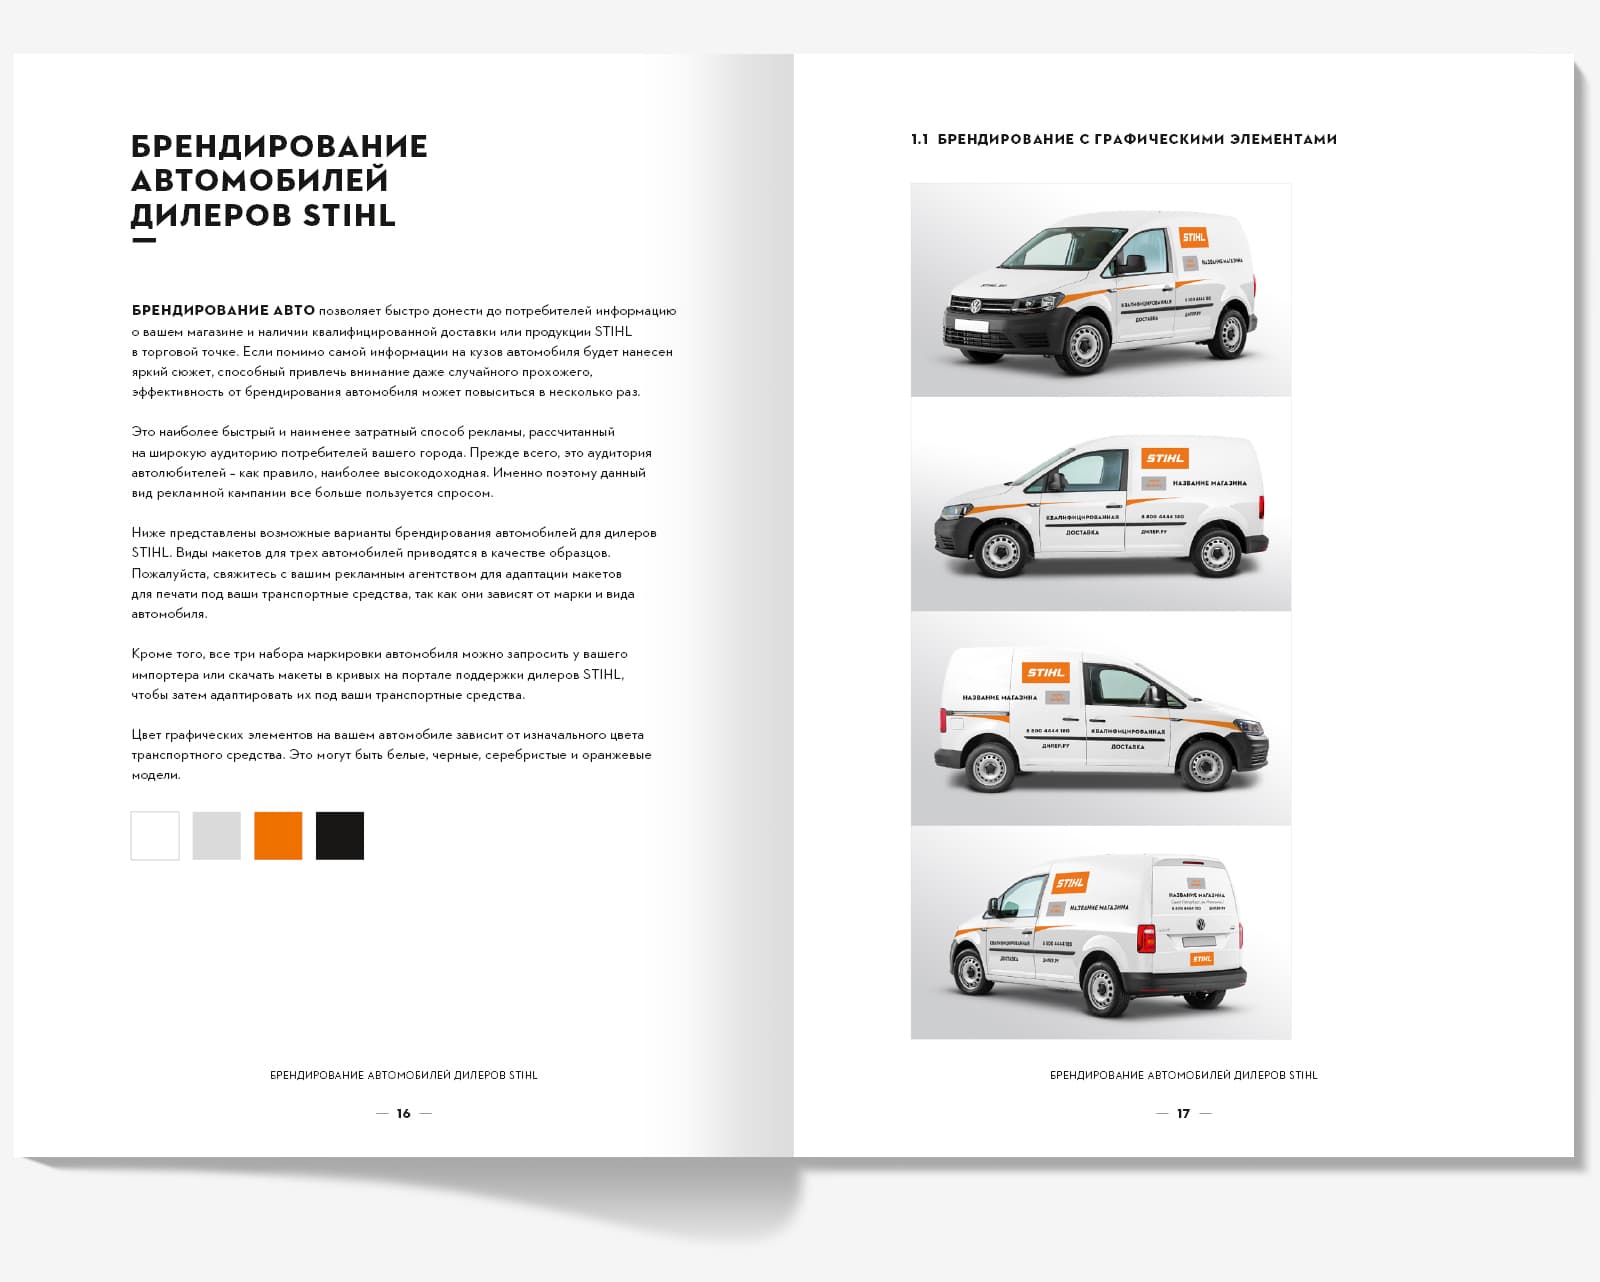 Сделали дизайн брошюры «Корпоративный дизайн STIHL» для компании STIHL